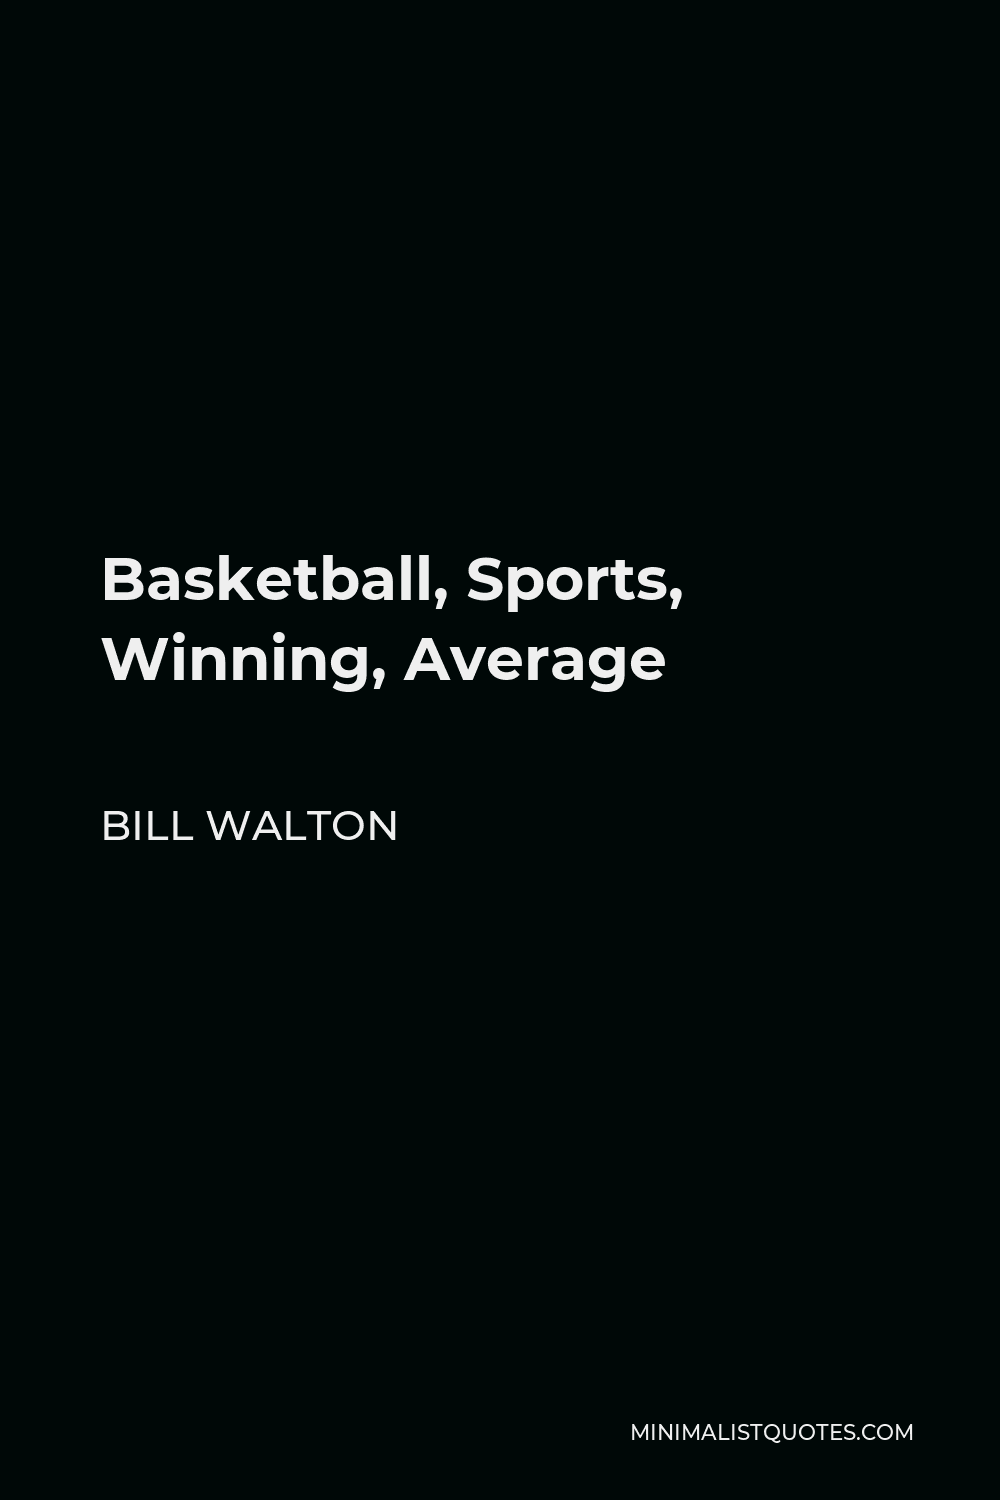 Bill Walton Quote - Basketball, Sports, Winning, Average